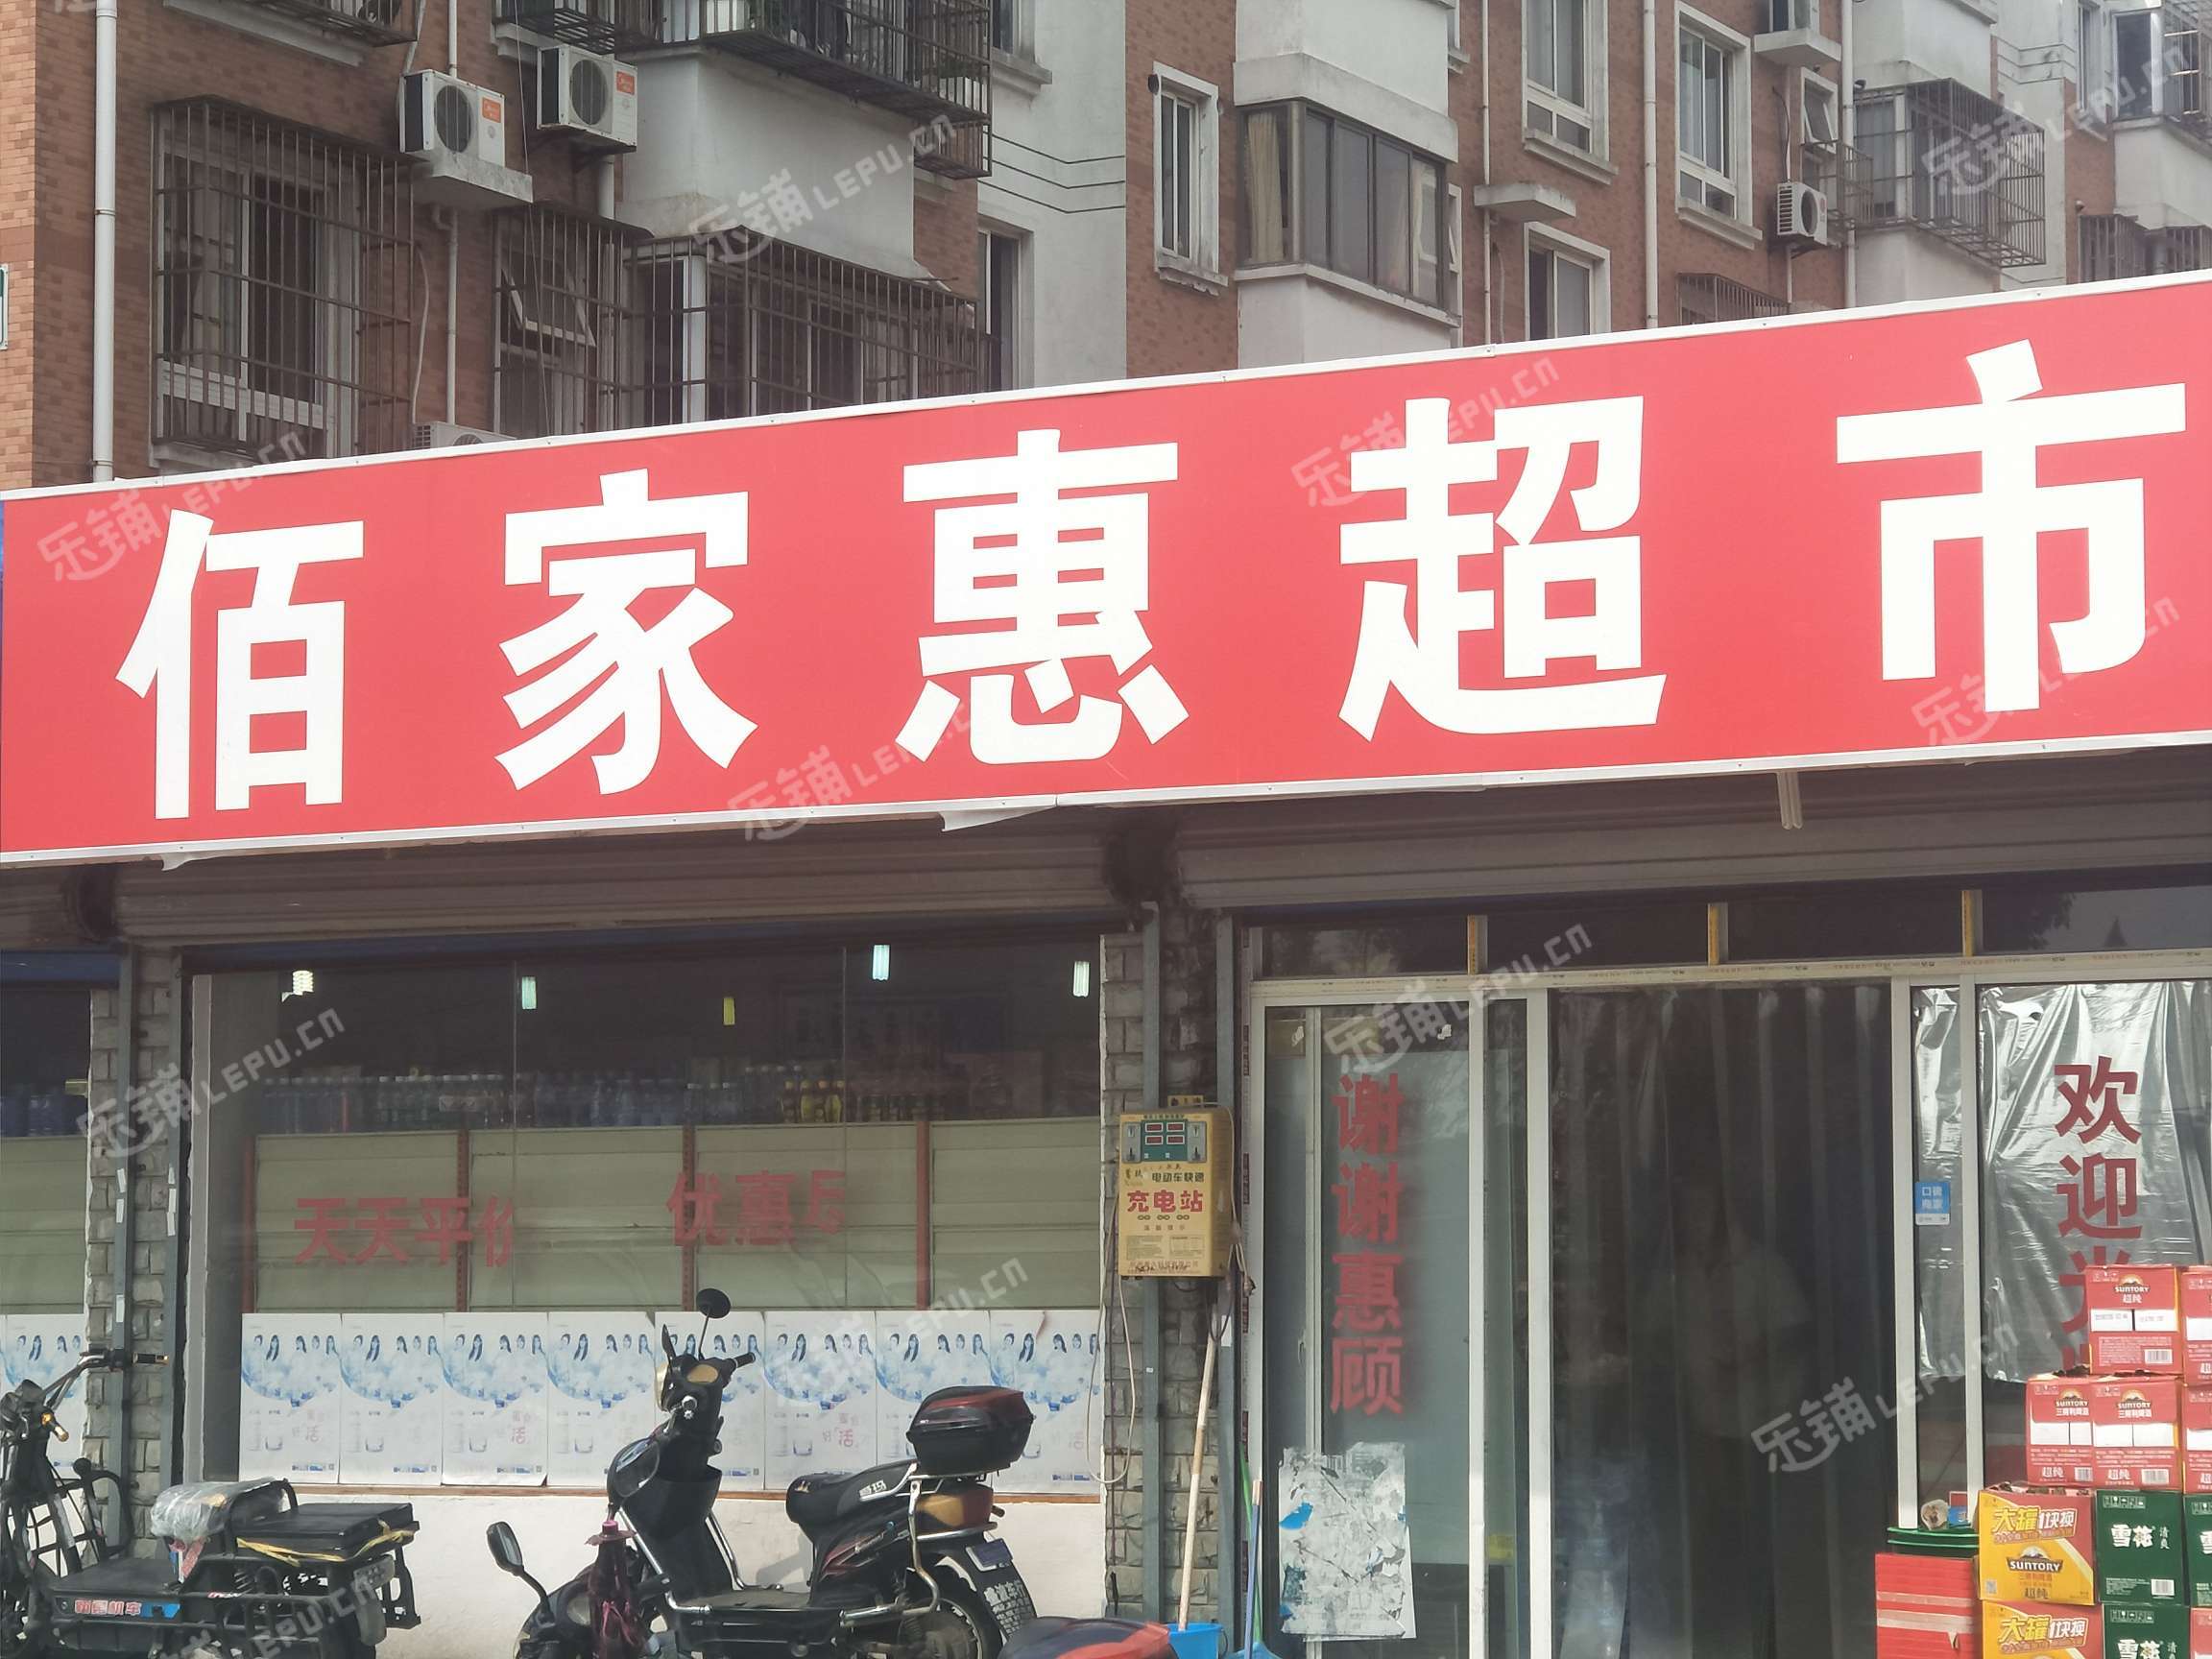 69 上海转让 69 浦东转让 69 川沙转让 69 百货超市